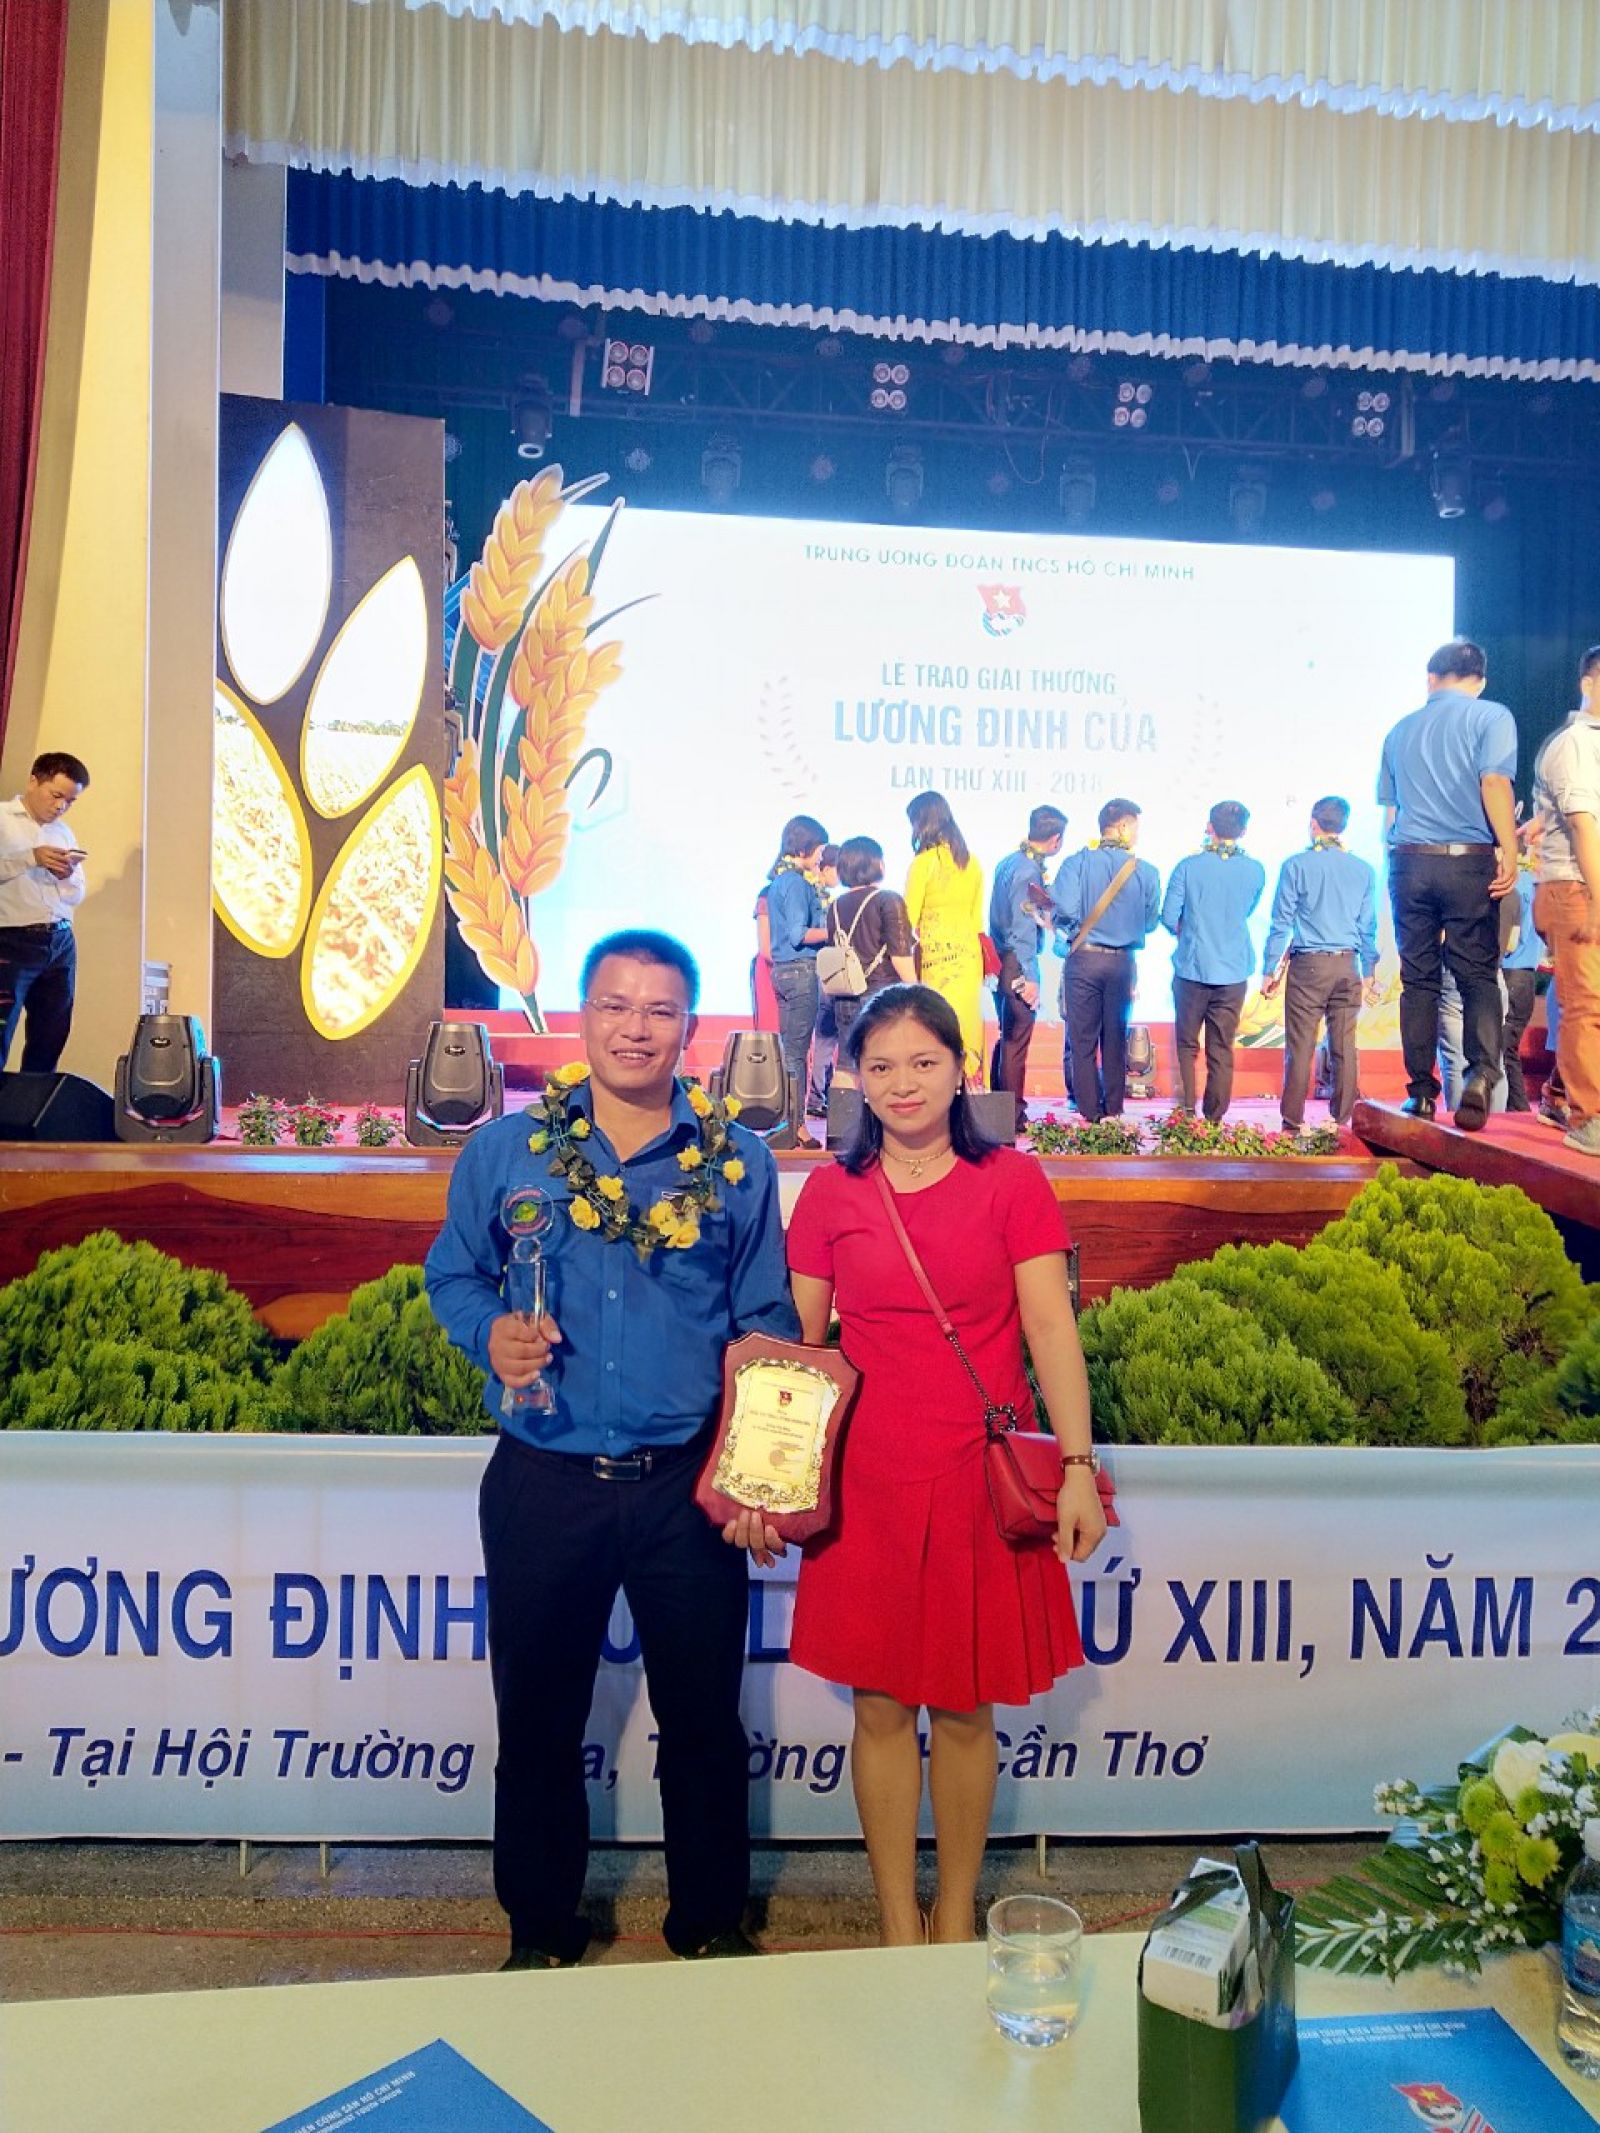 Khổng Văn Hưng cùng vợ tại lễ trao giải thưởng Lương Định Của 2018